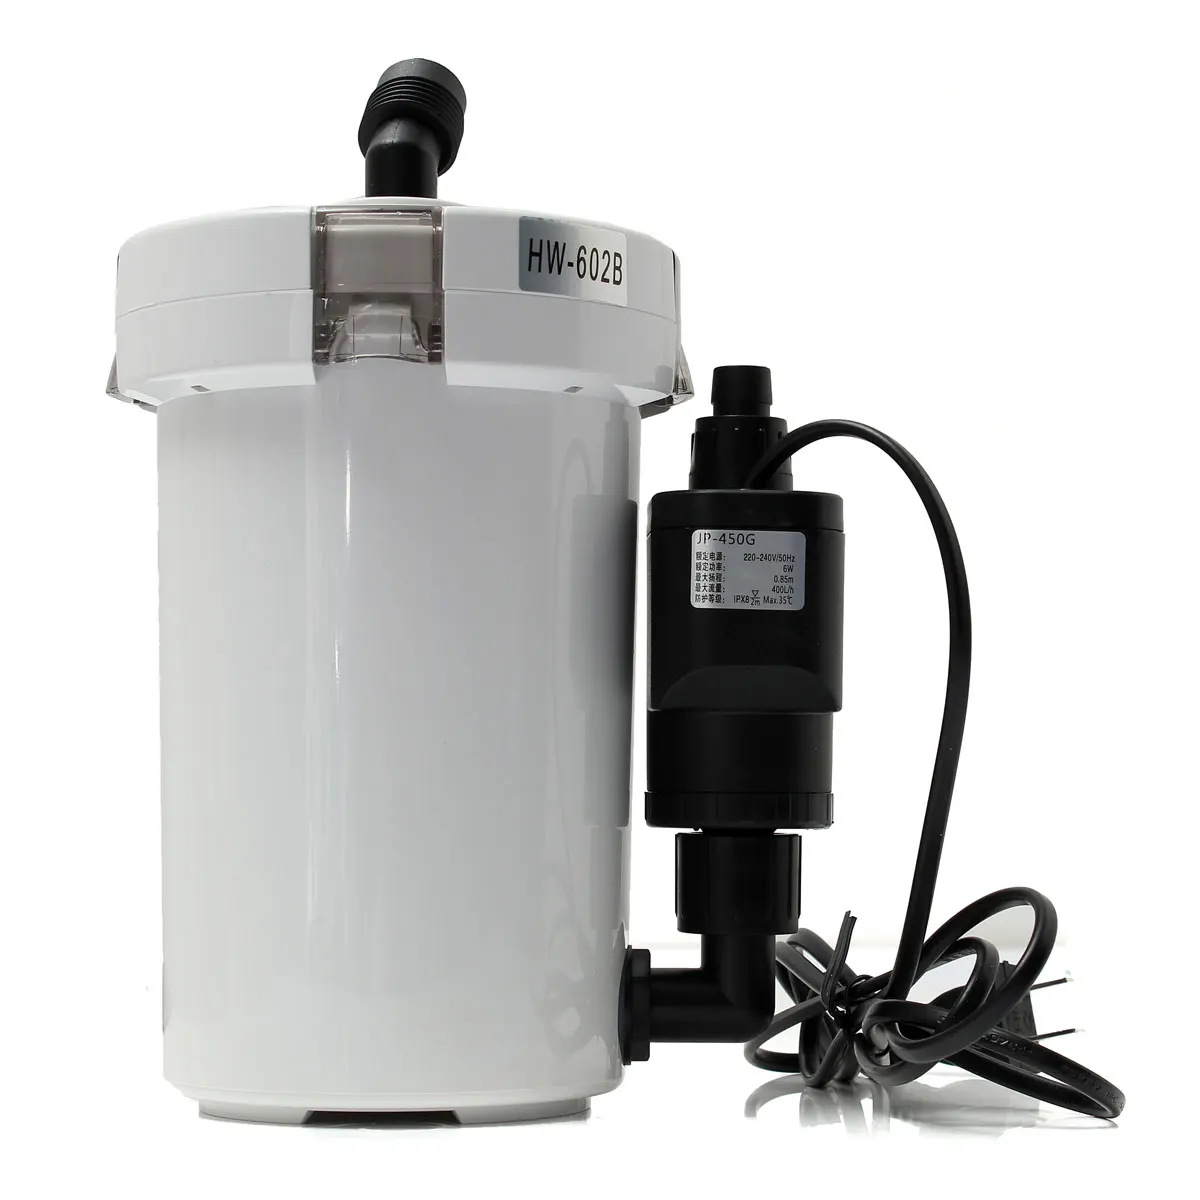 HW-602B система наружной фильтрации аквариума 220-240 В 6 Вт 400л/ч столешница аквариума внешний Ультра-тихий фильтр канистры